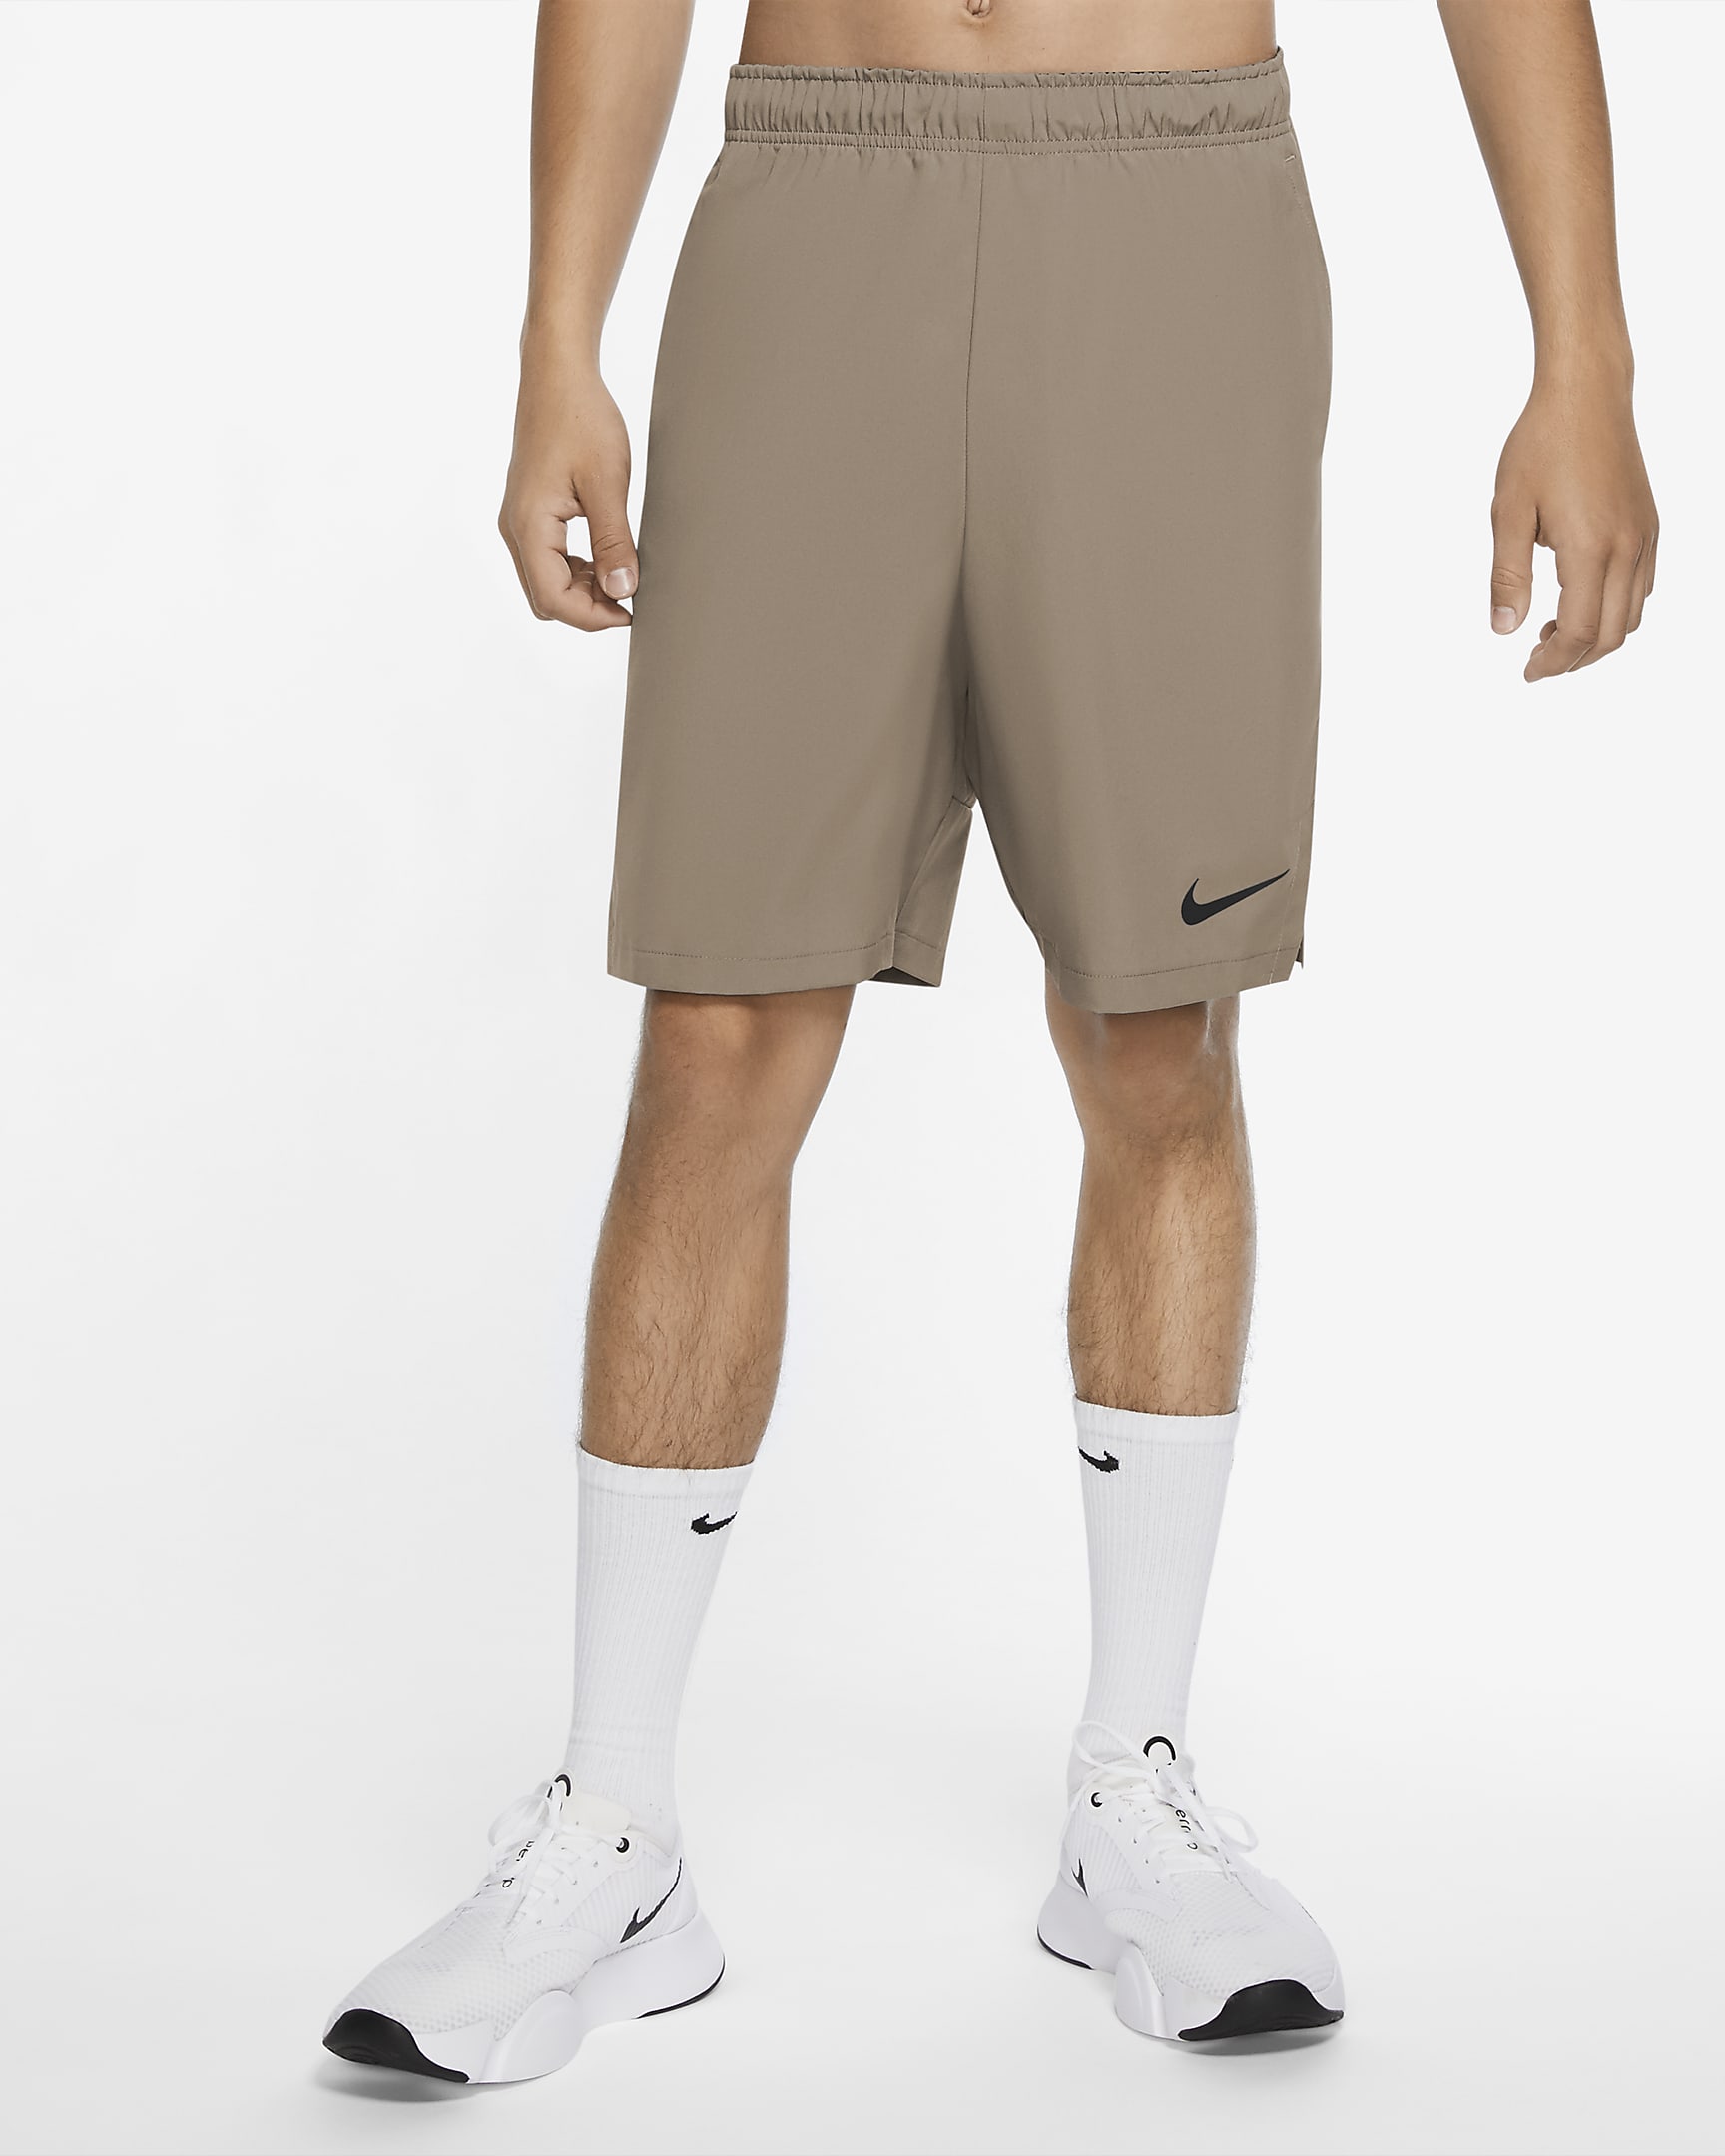 Pantalón Nike Flex